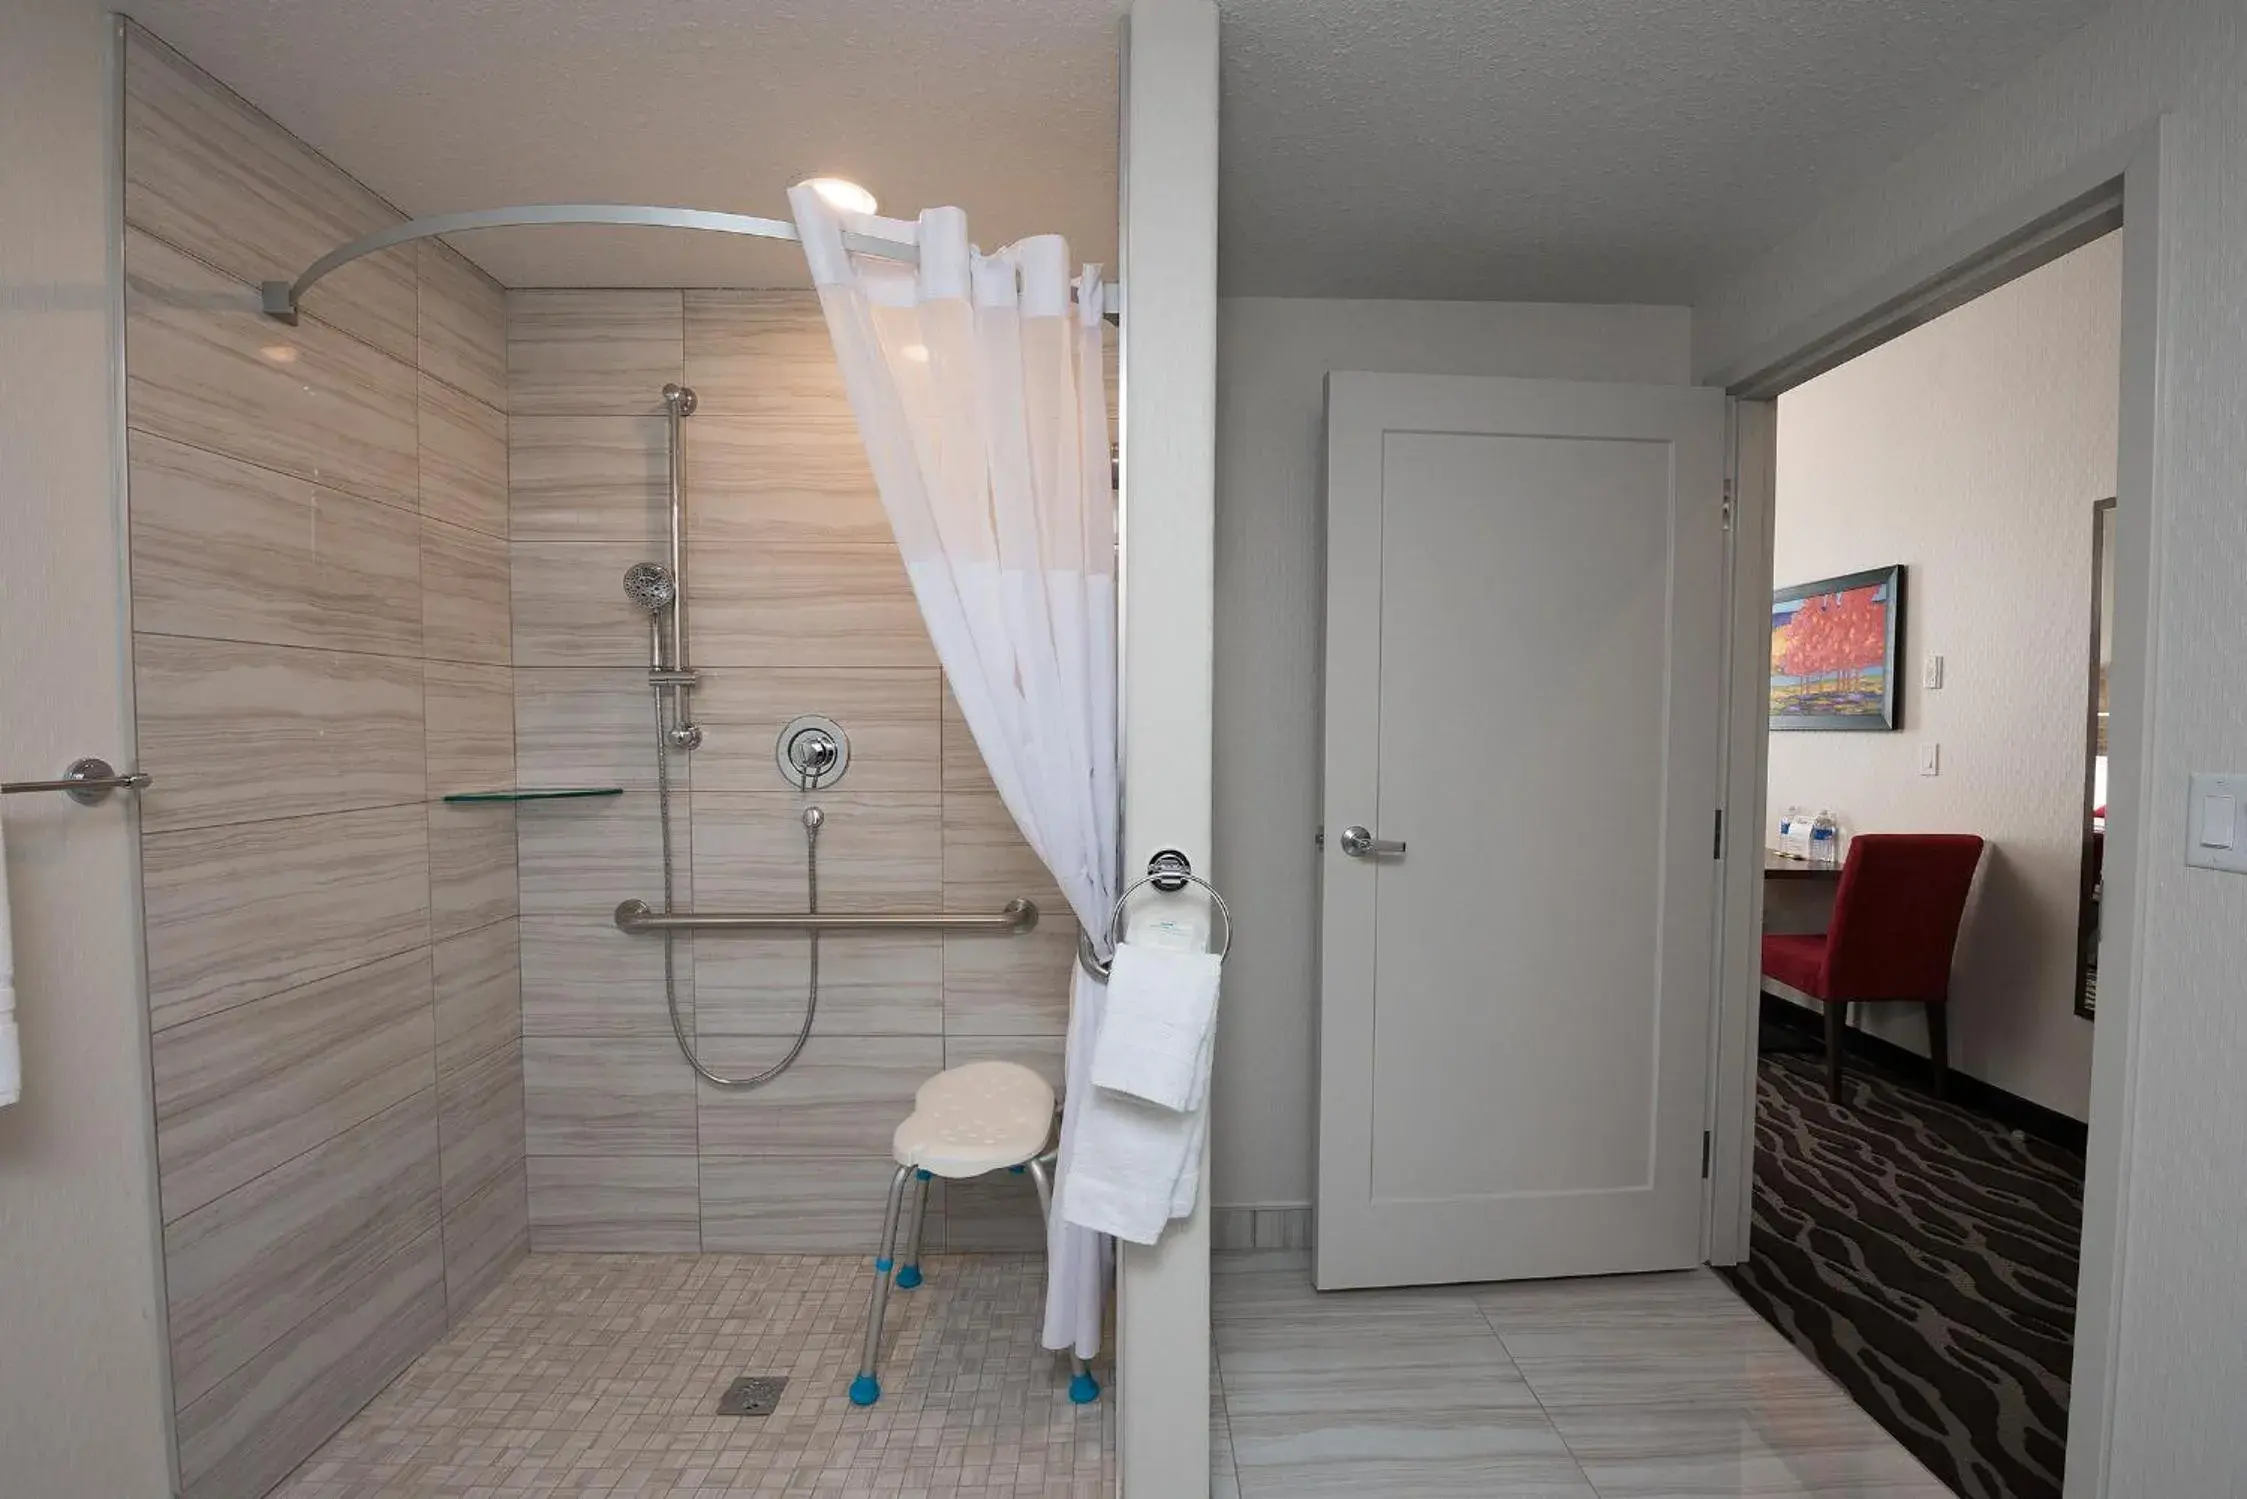 Bathroom in Encore Suites by Service Plus Inns